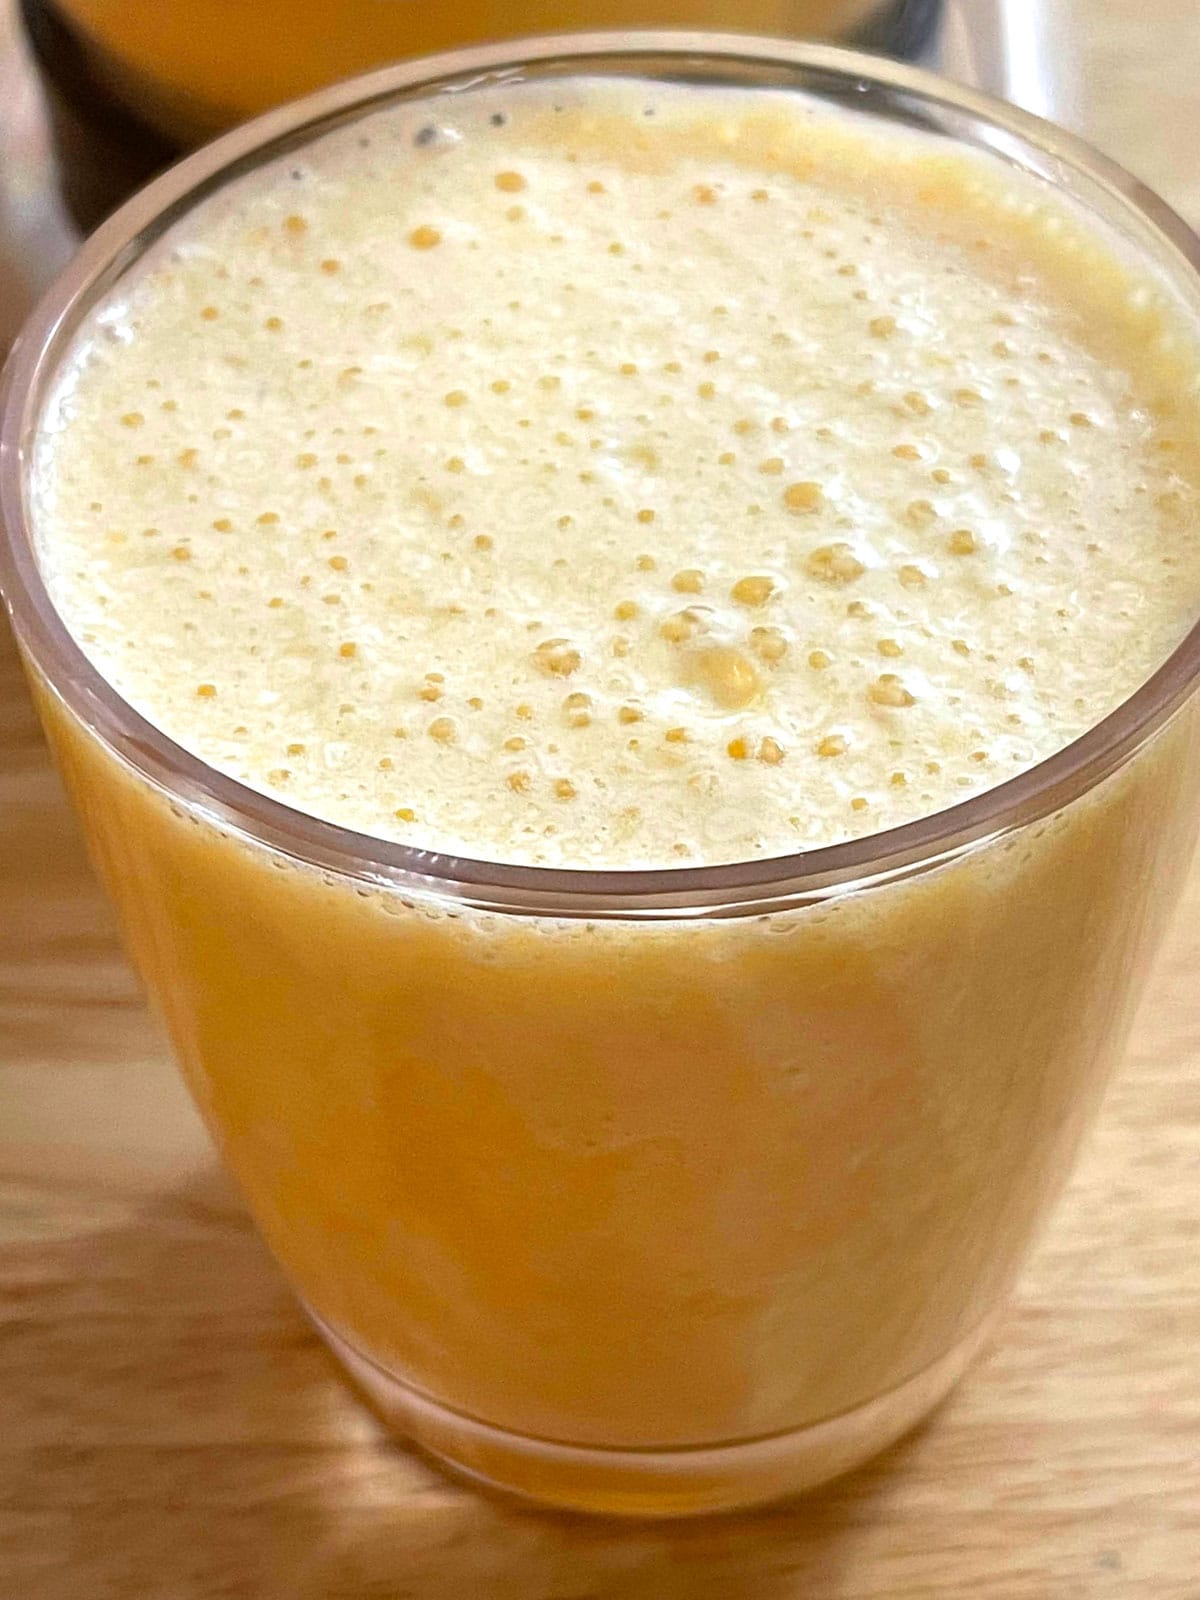 banana orange juice smoothie